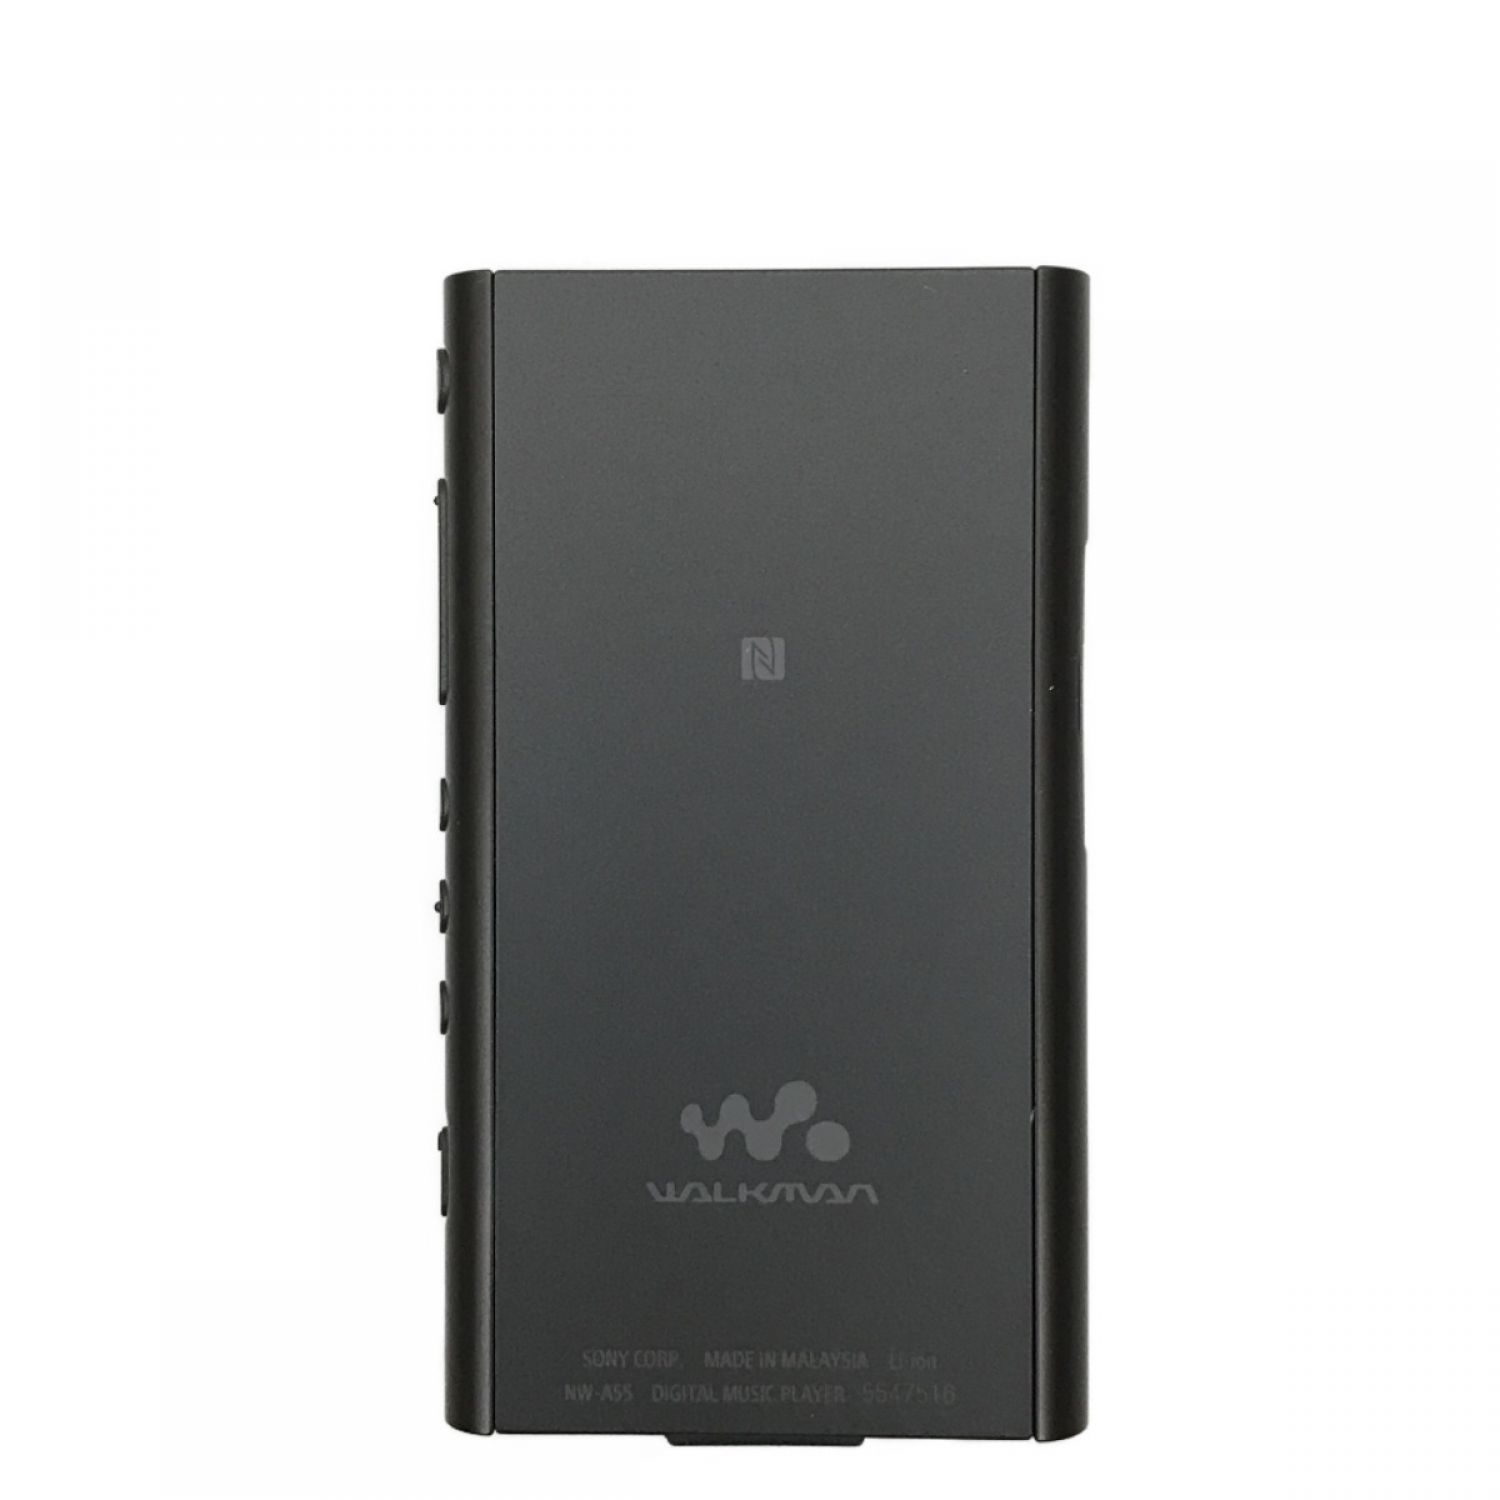 中古】 SONY ソニー WALK MAN ウォークマン 16GB NW-A55/BM ブラック B ...